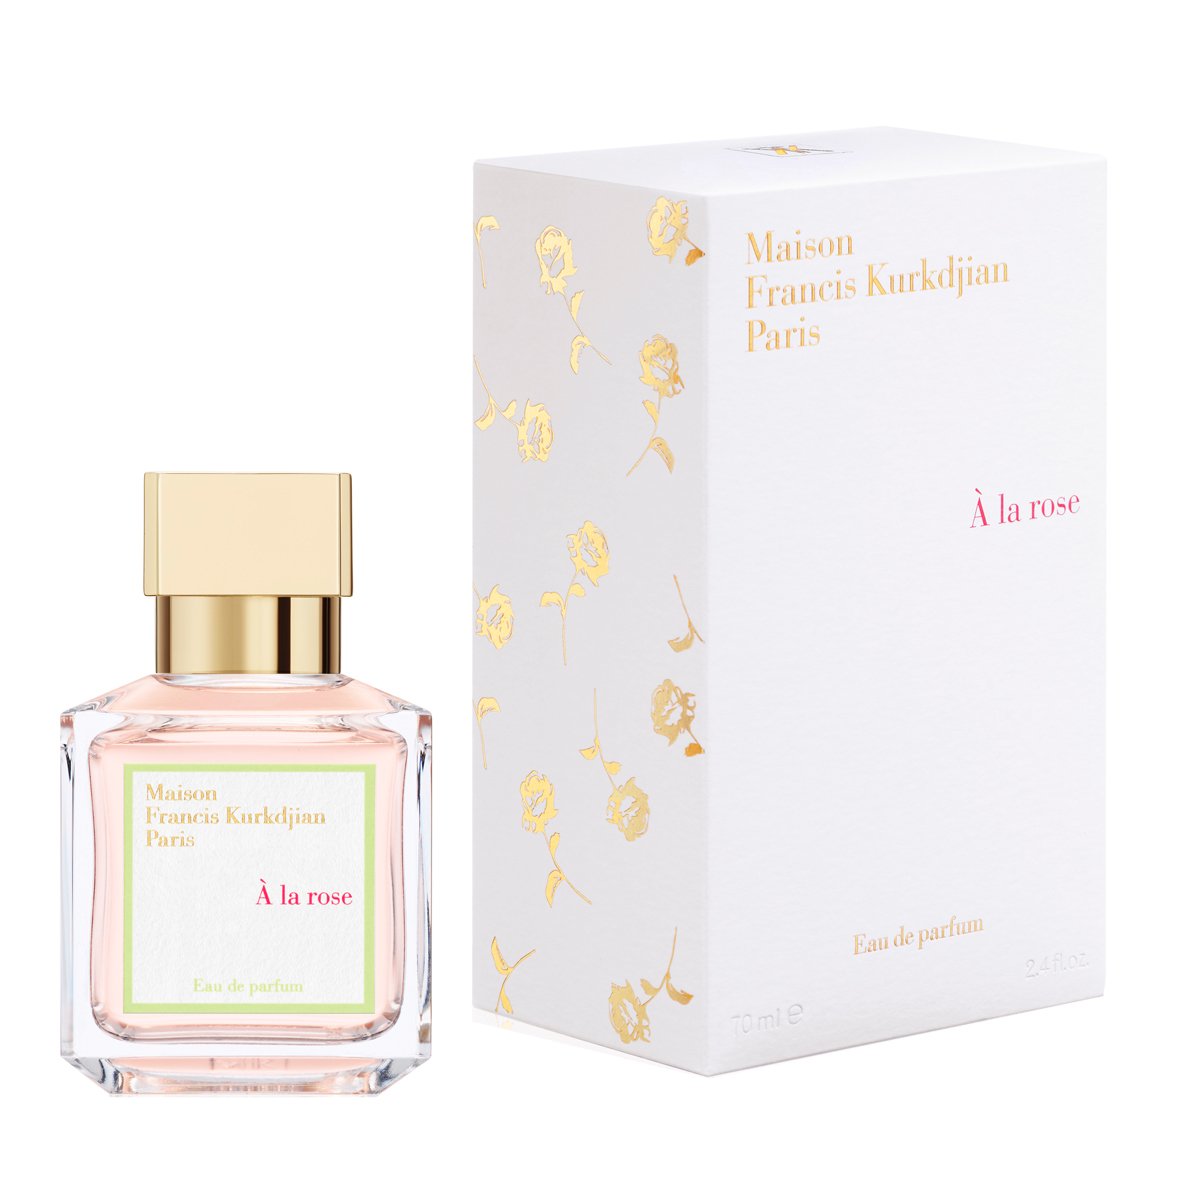 BEST PERFUMES FOR WOMEN - A la Rose by Maison Francis Kurkdjian